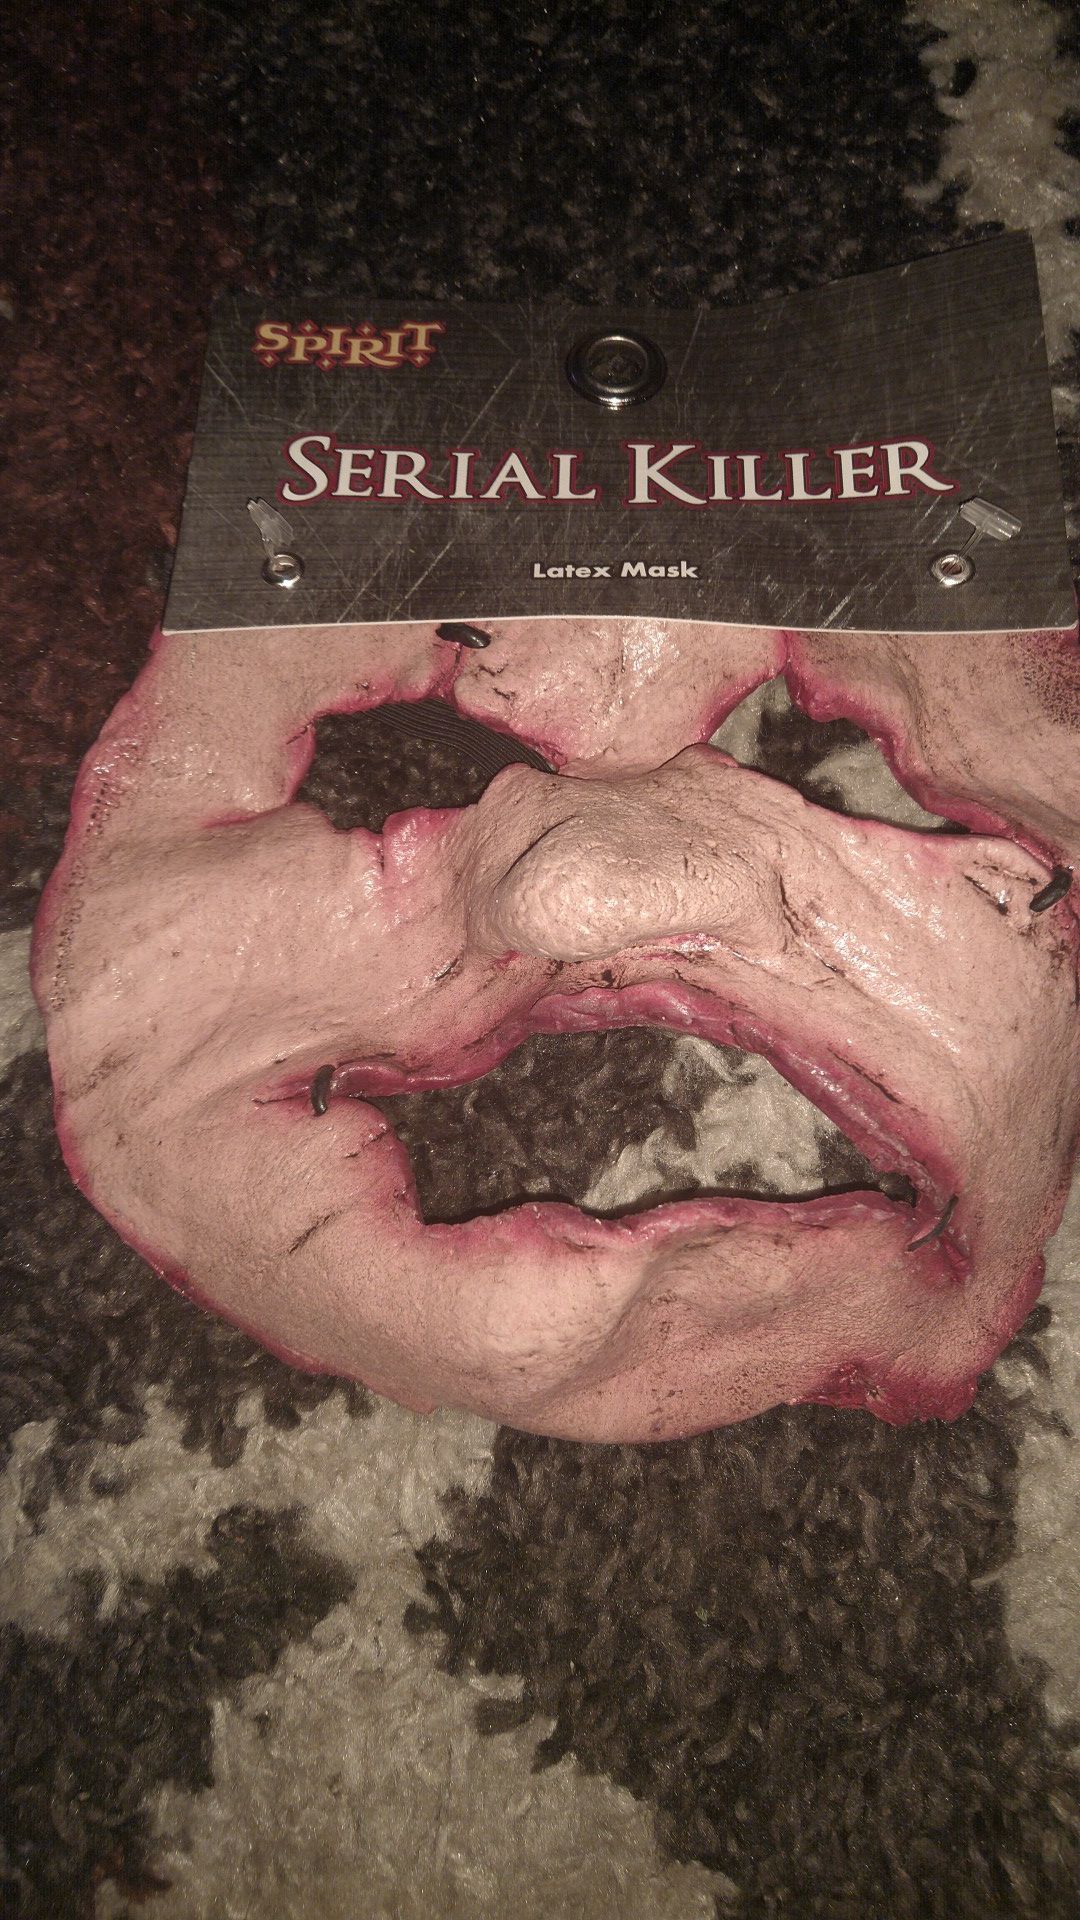 Serial killer mask